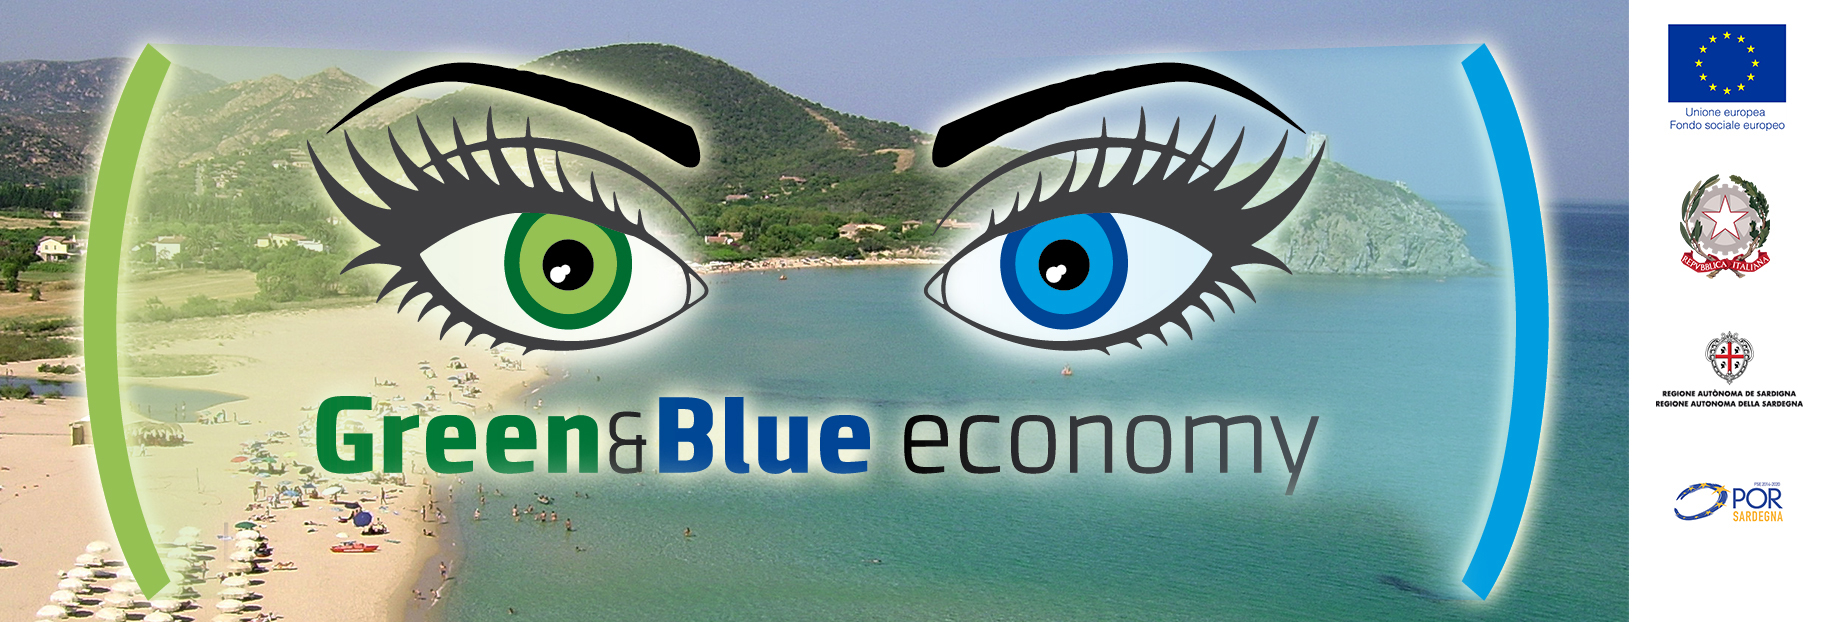 Green & Blue economy: nuovi stimoli per il lavoro